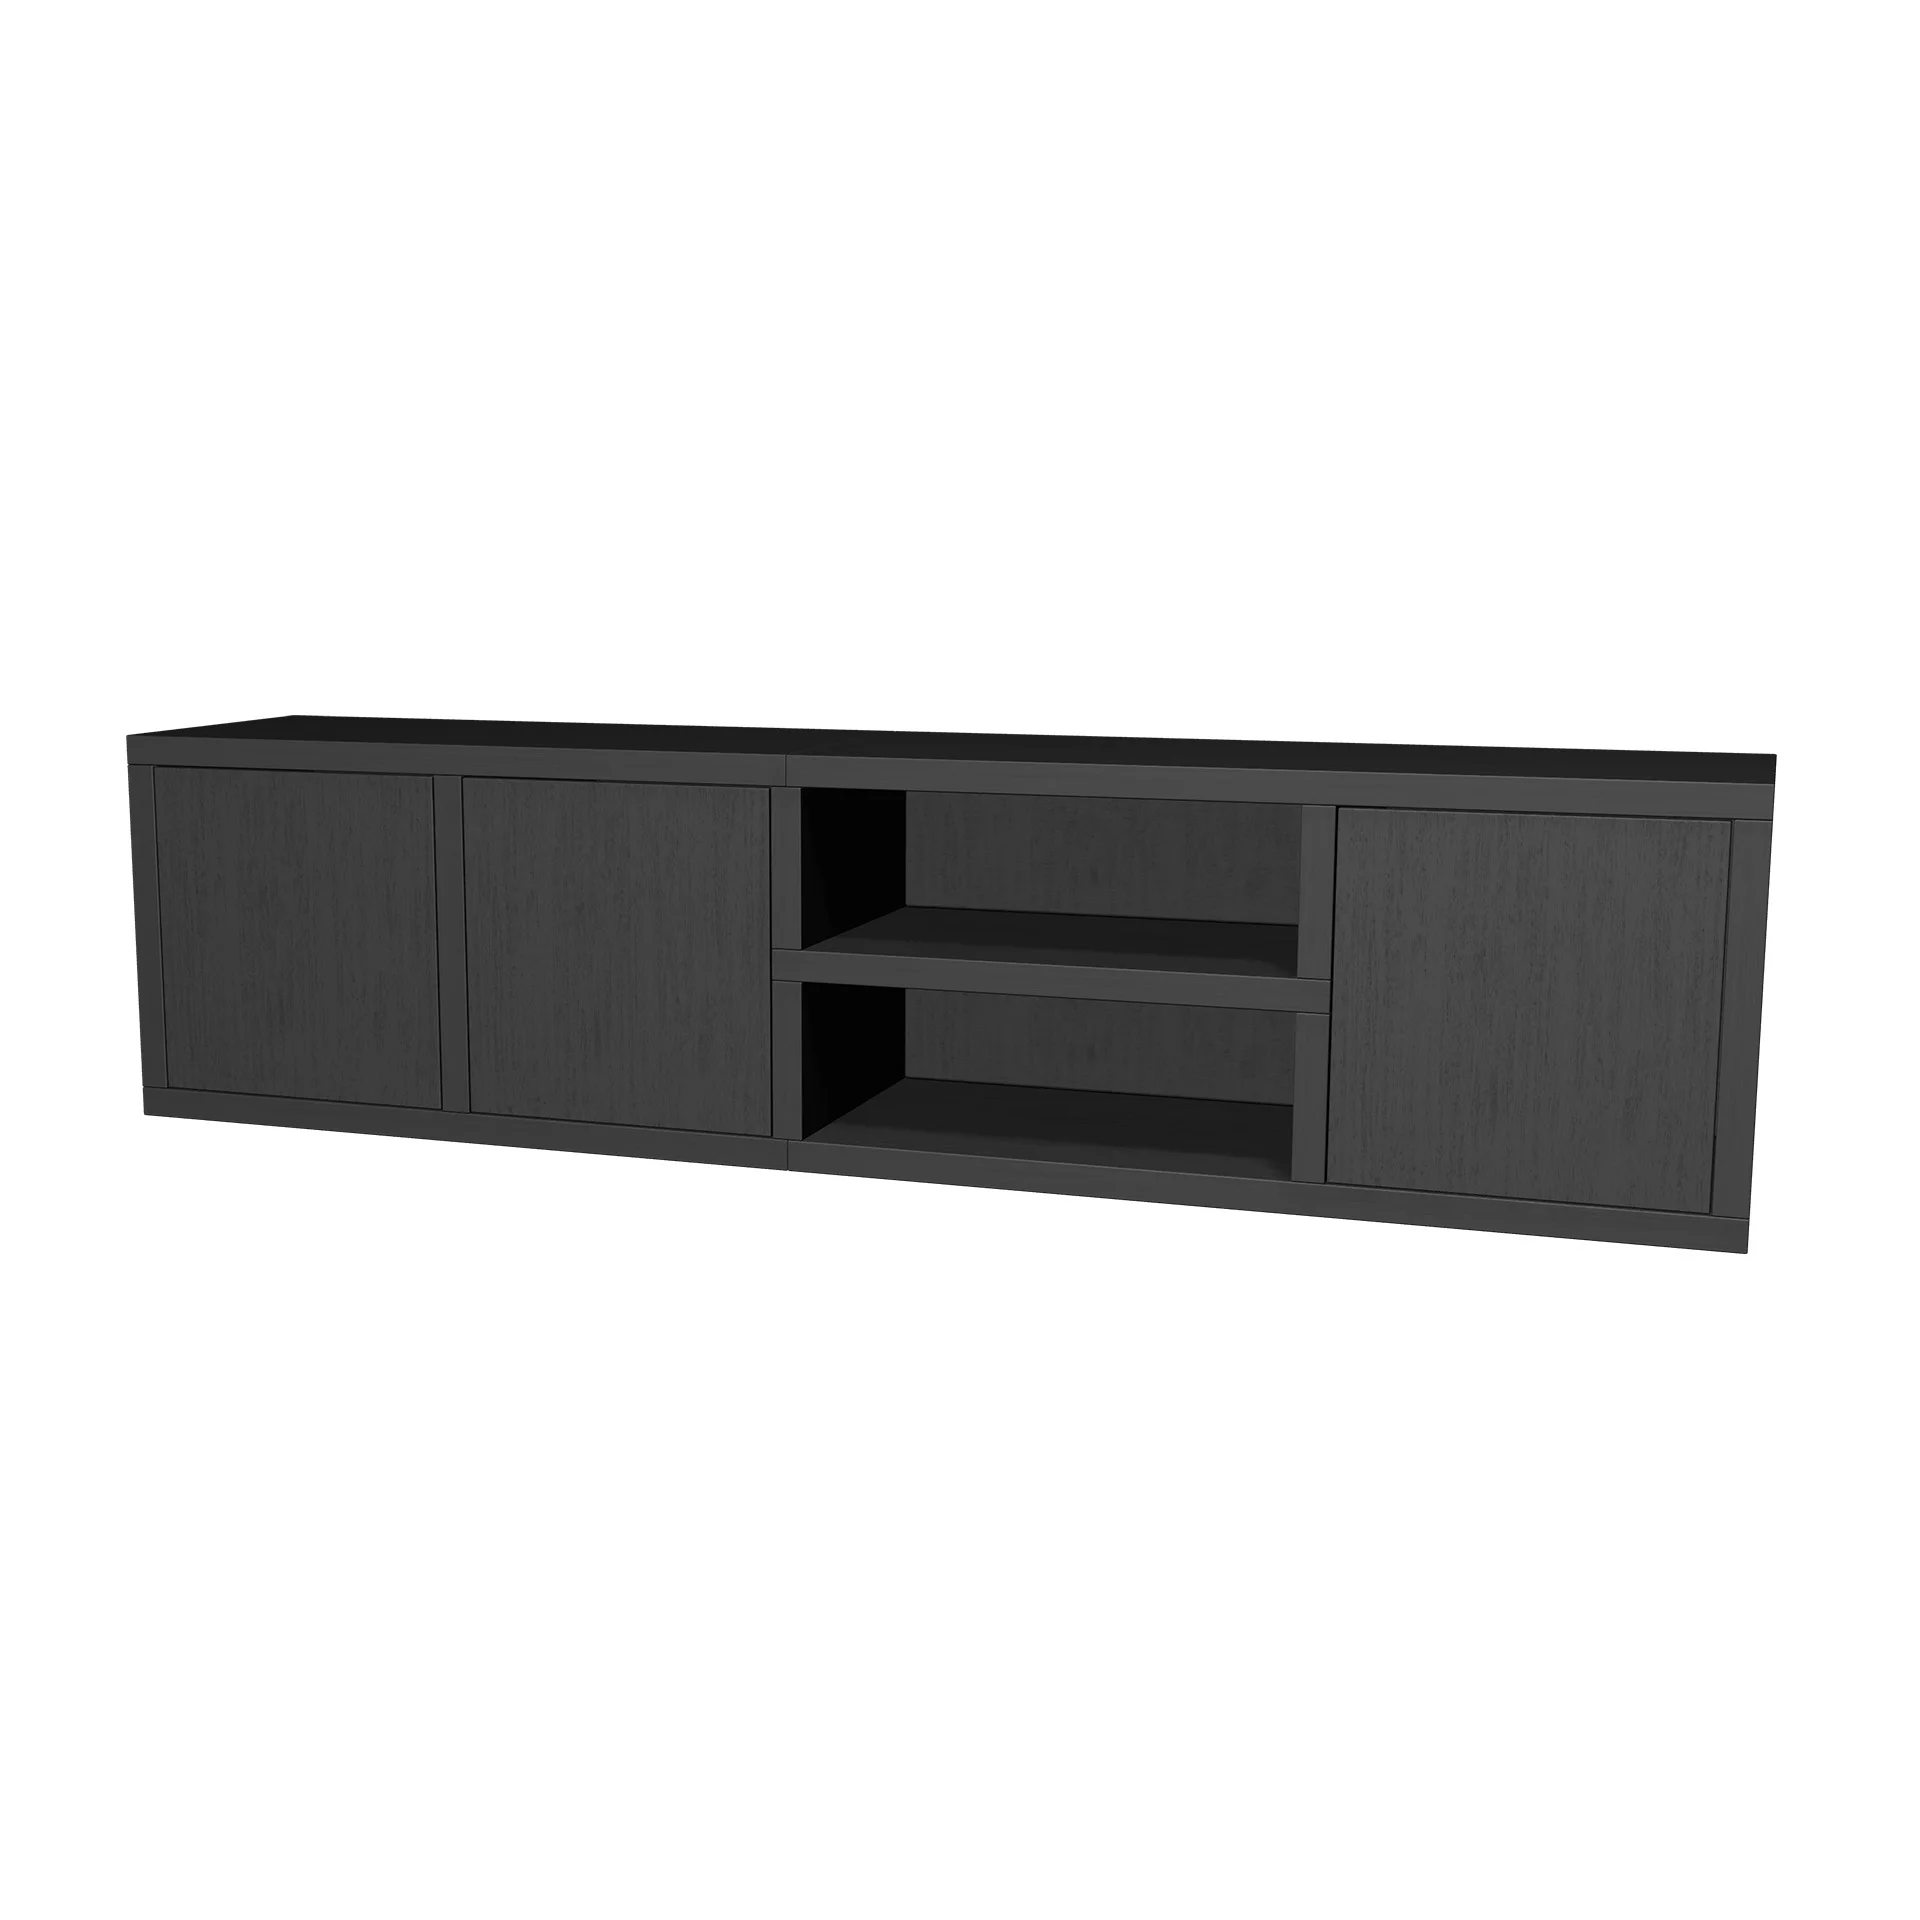 TSFC023 in black oak furniture board